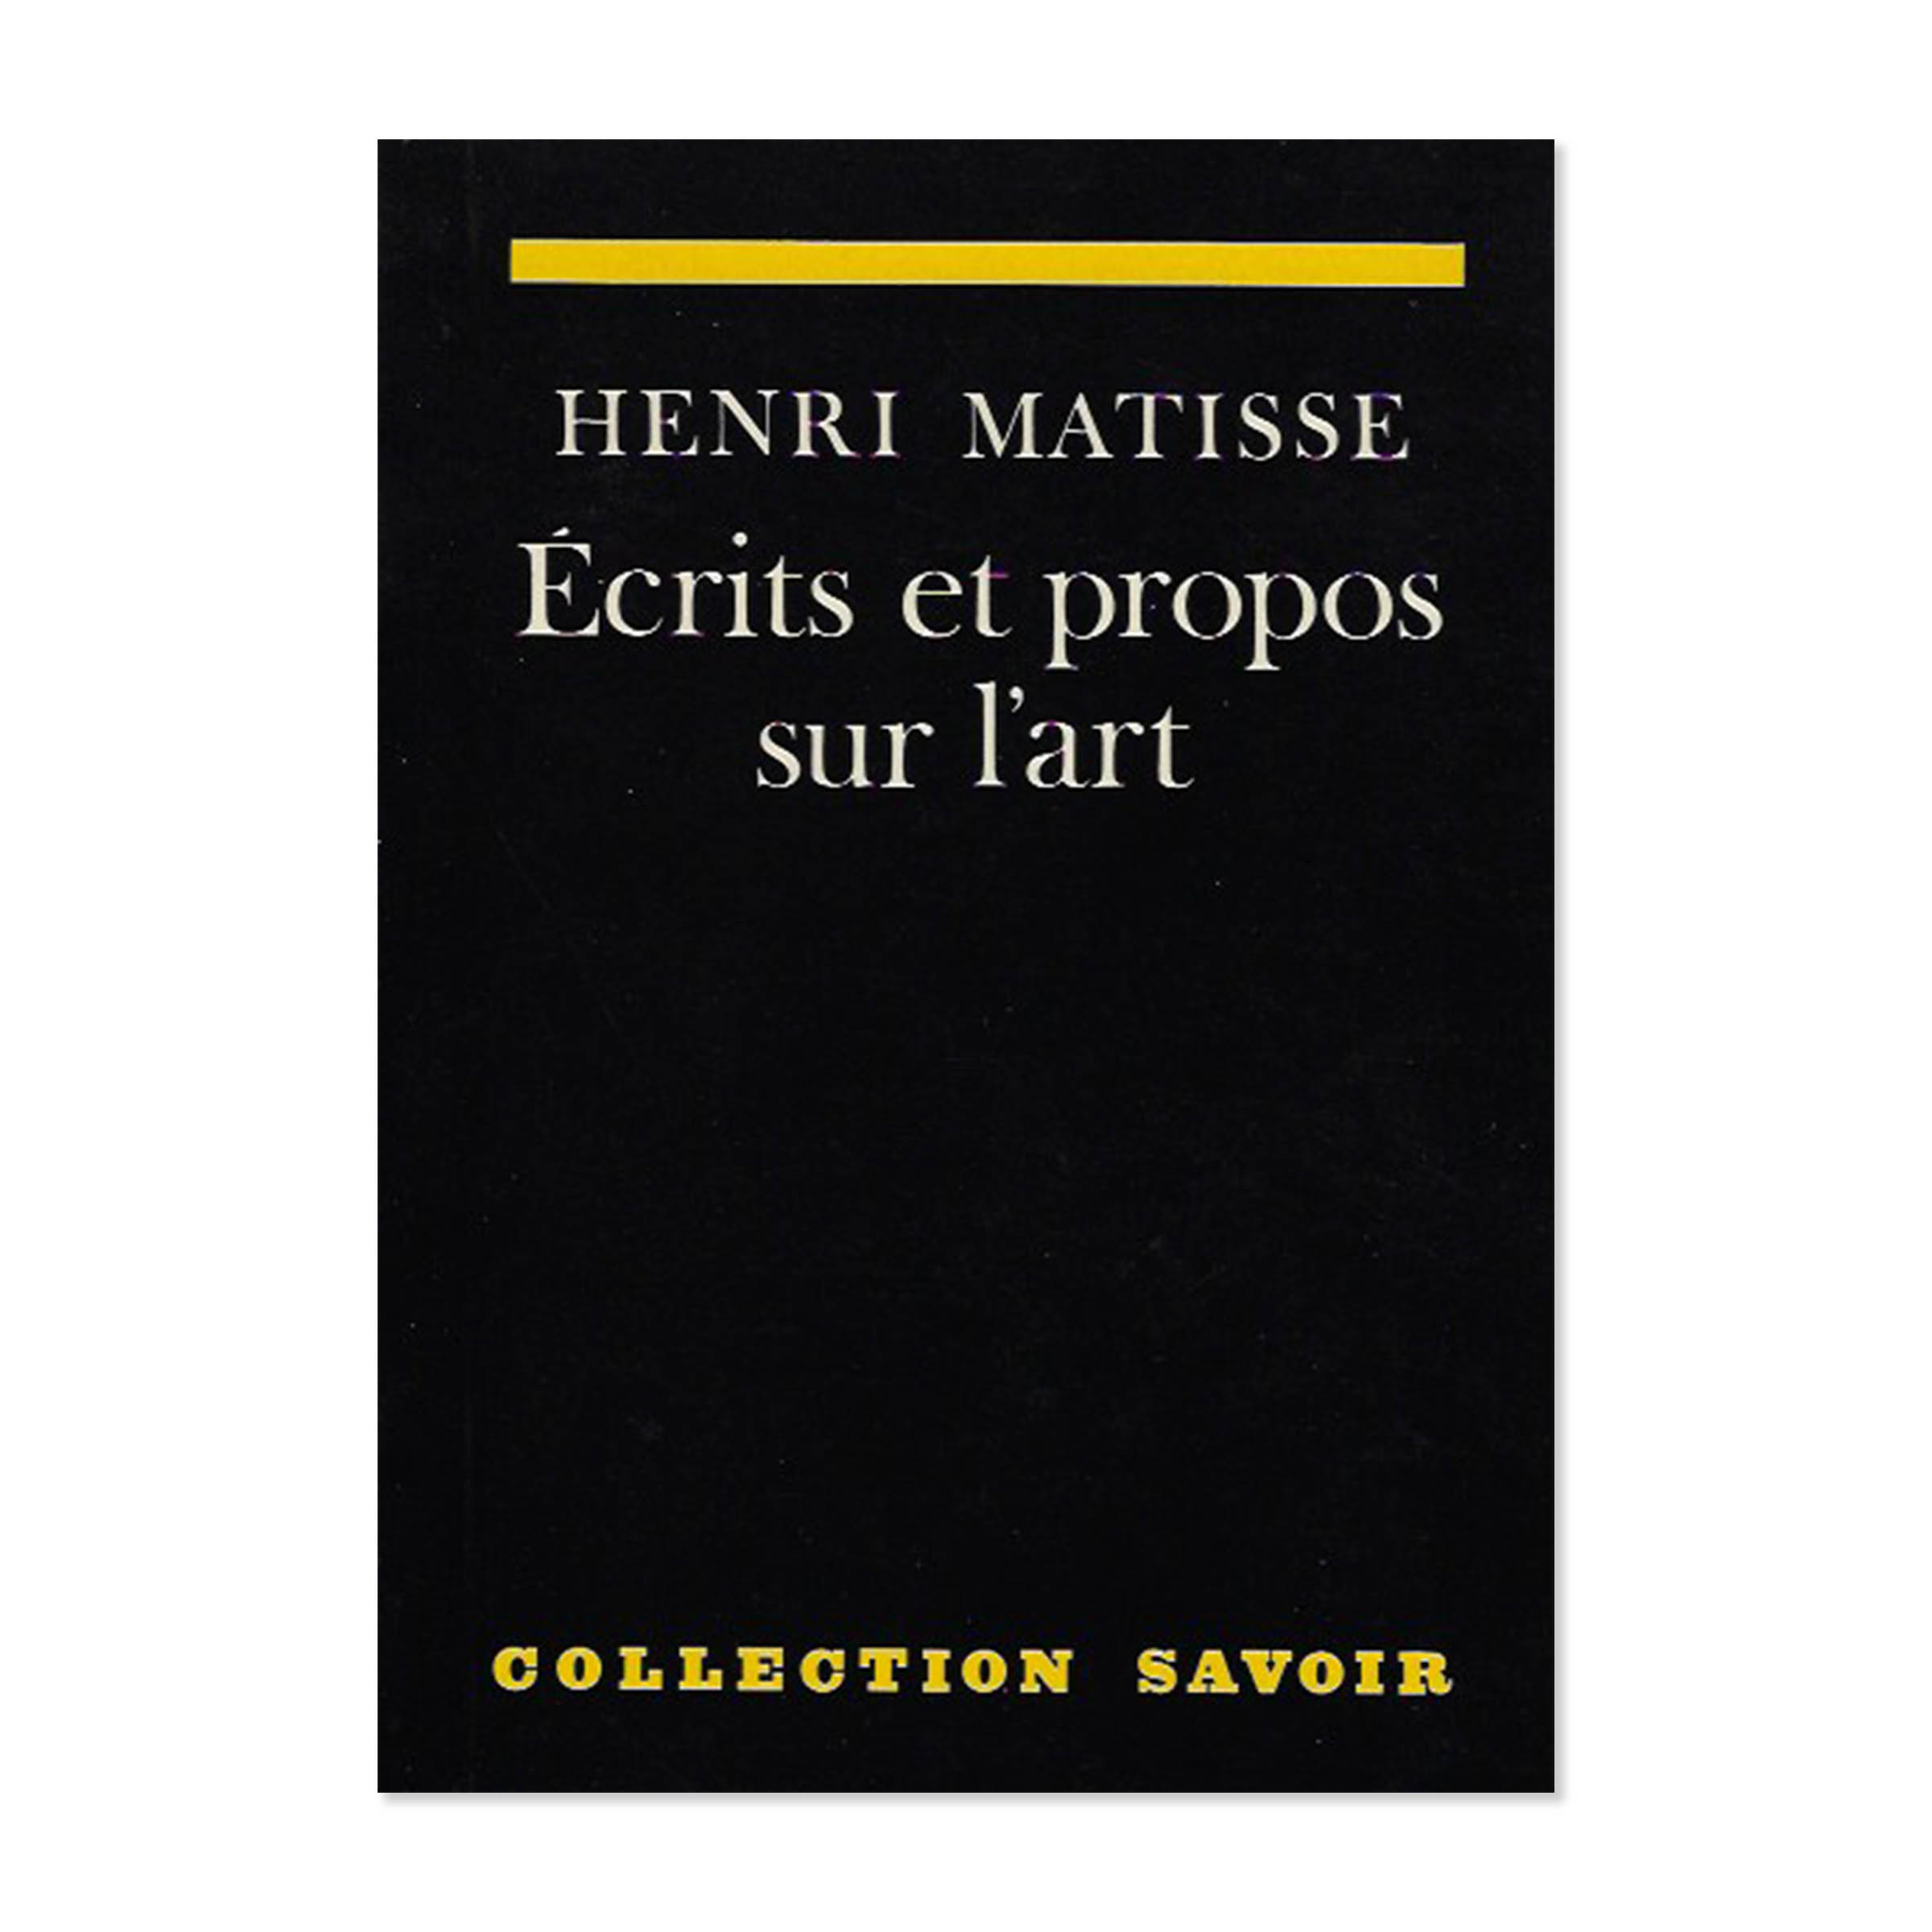 Henri Matisse. Écrits et propos sur l'art. Cover view